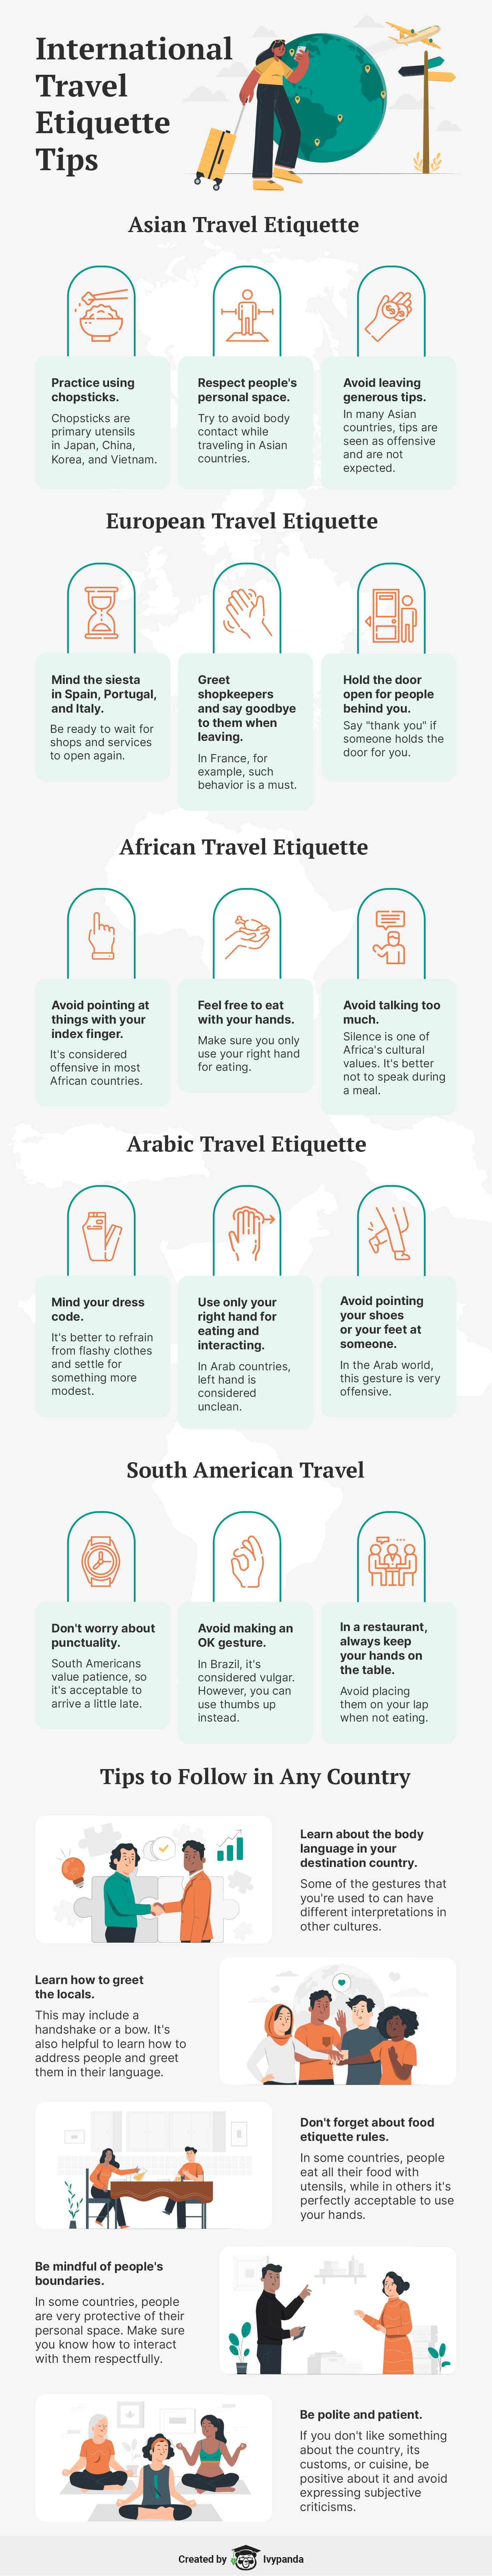 International Travel Etiquette Tips